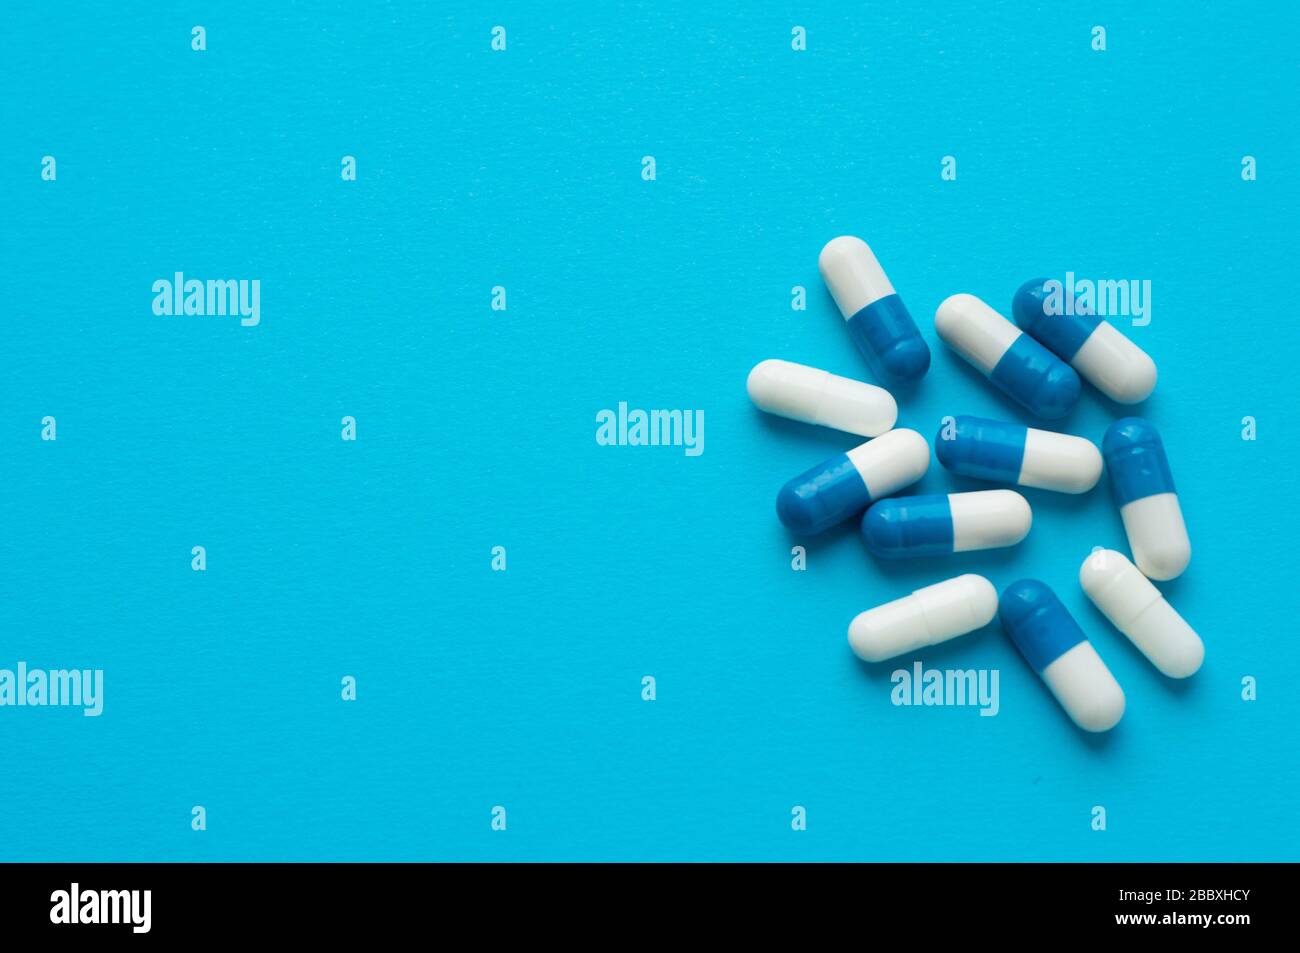 Antivirale Kapseln, Tabletten zur Behandlung auf blauem Grund. Weiß-blaue Kapseln. Flache Lage, Draufsicht Stockfoto